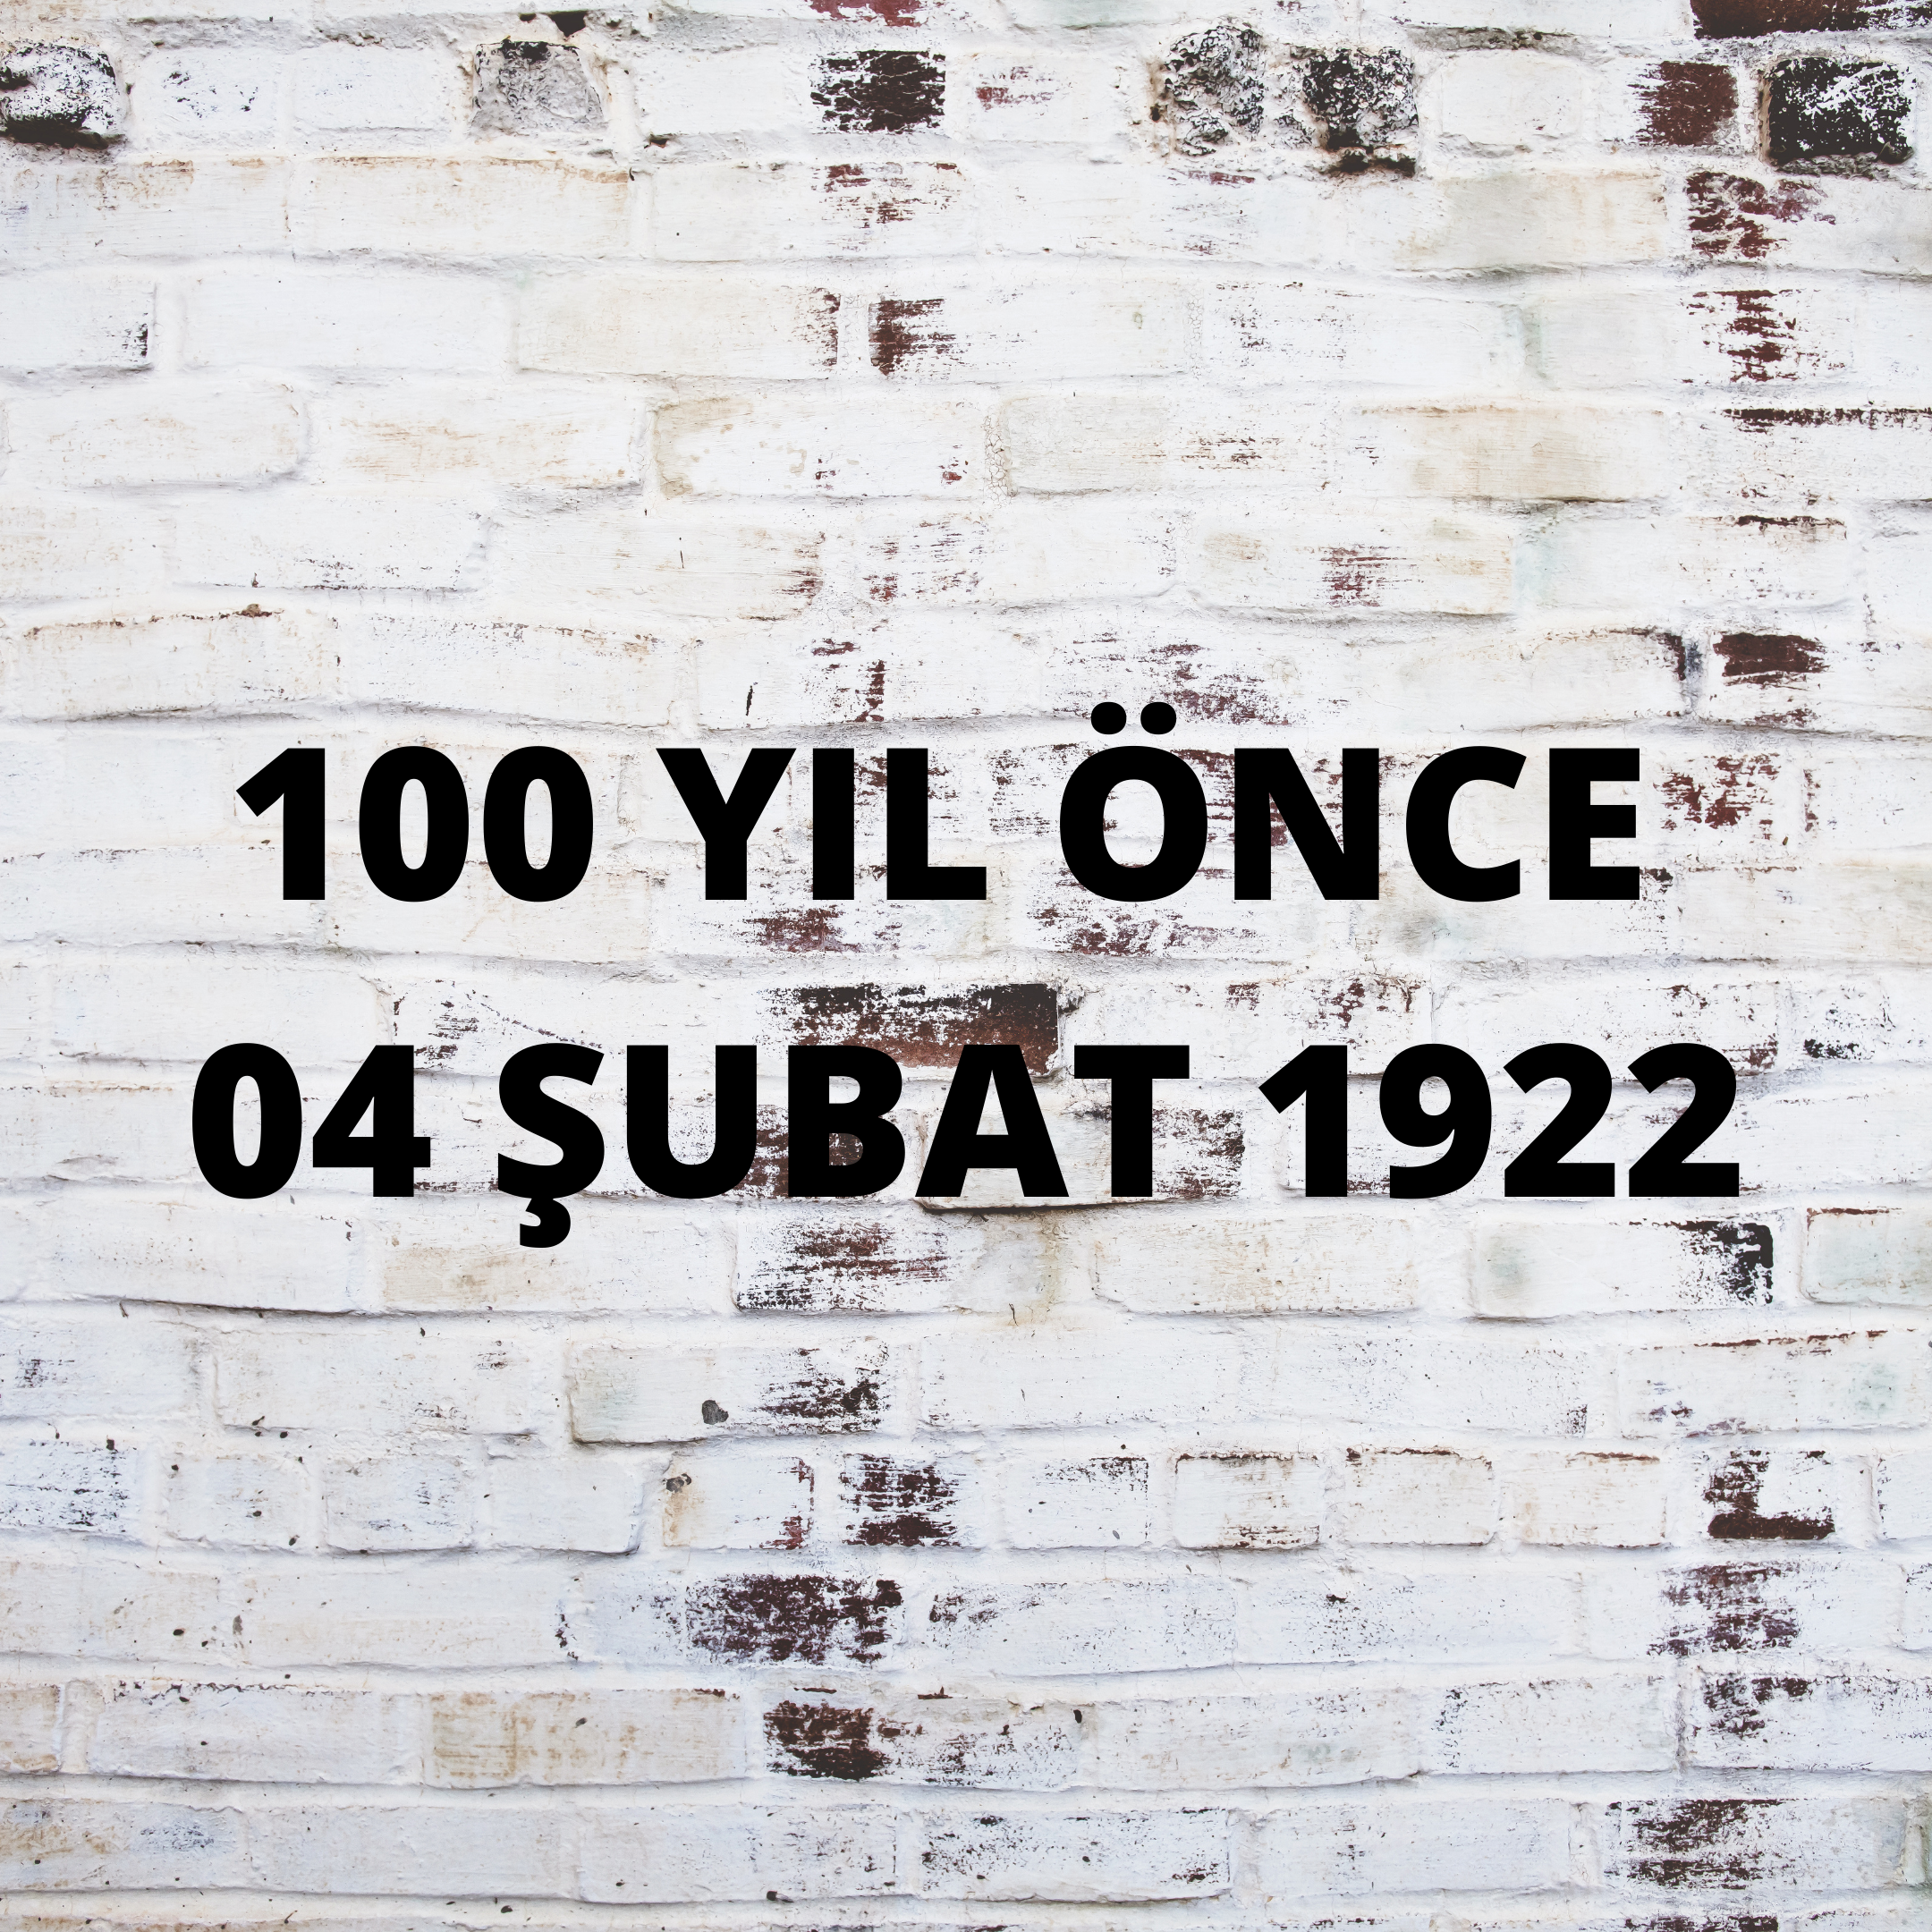 100 YIL ÖNCE 4 ŞUBAT 1922